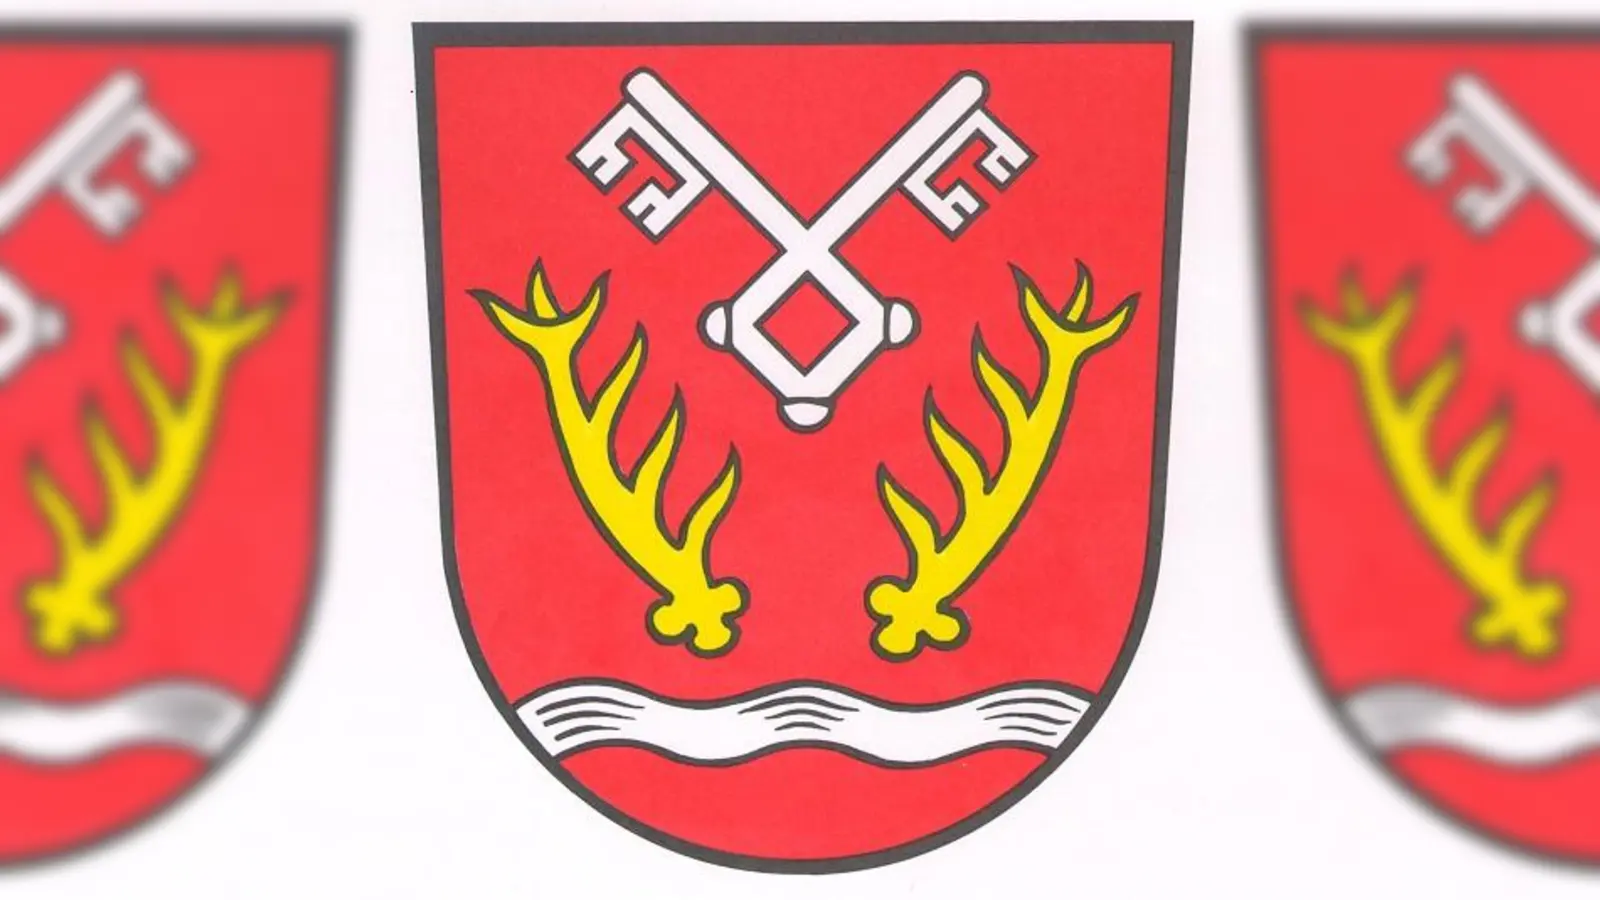 Seit 1979 heißt Kirchdorf auch "an der Amper" und führt ein eigenes Wappen. (Foto: Gem)